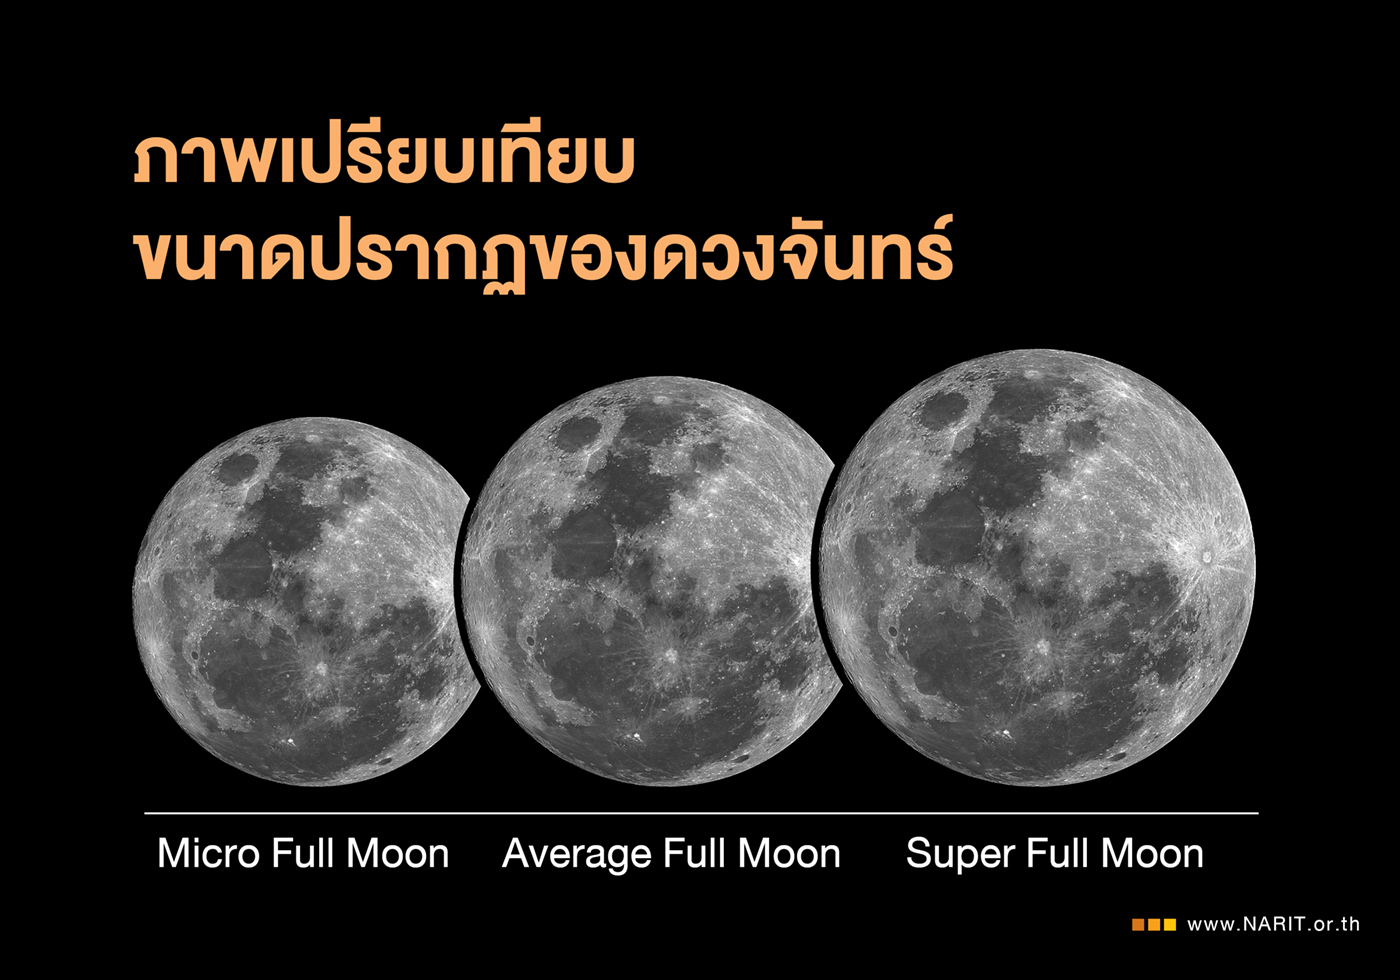 คืน 5 ถึง รุ่งเช้า 6 กุมภาพันธ์ 2566 ดวงจันทร์เต็มดวงไกลโลกที่สุดในรอบปี